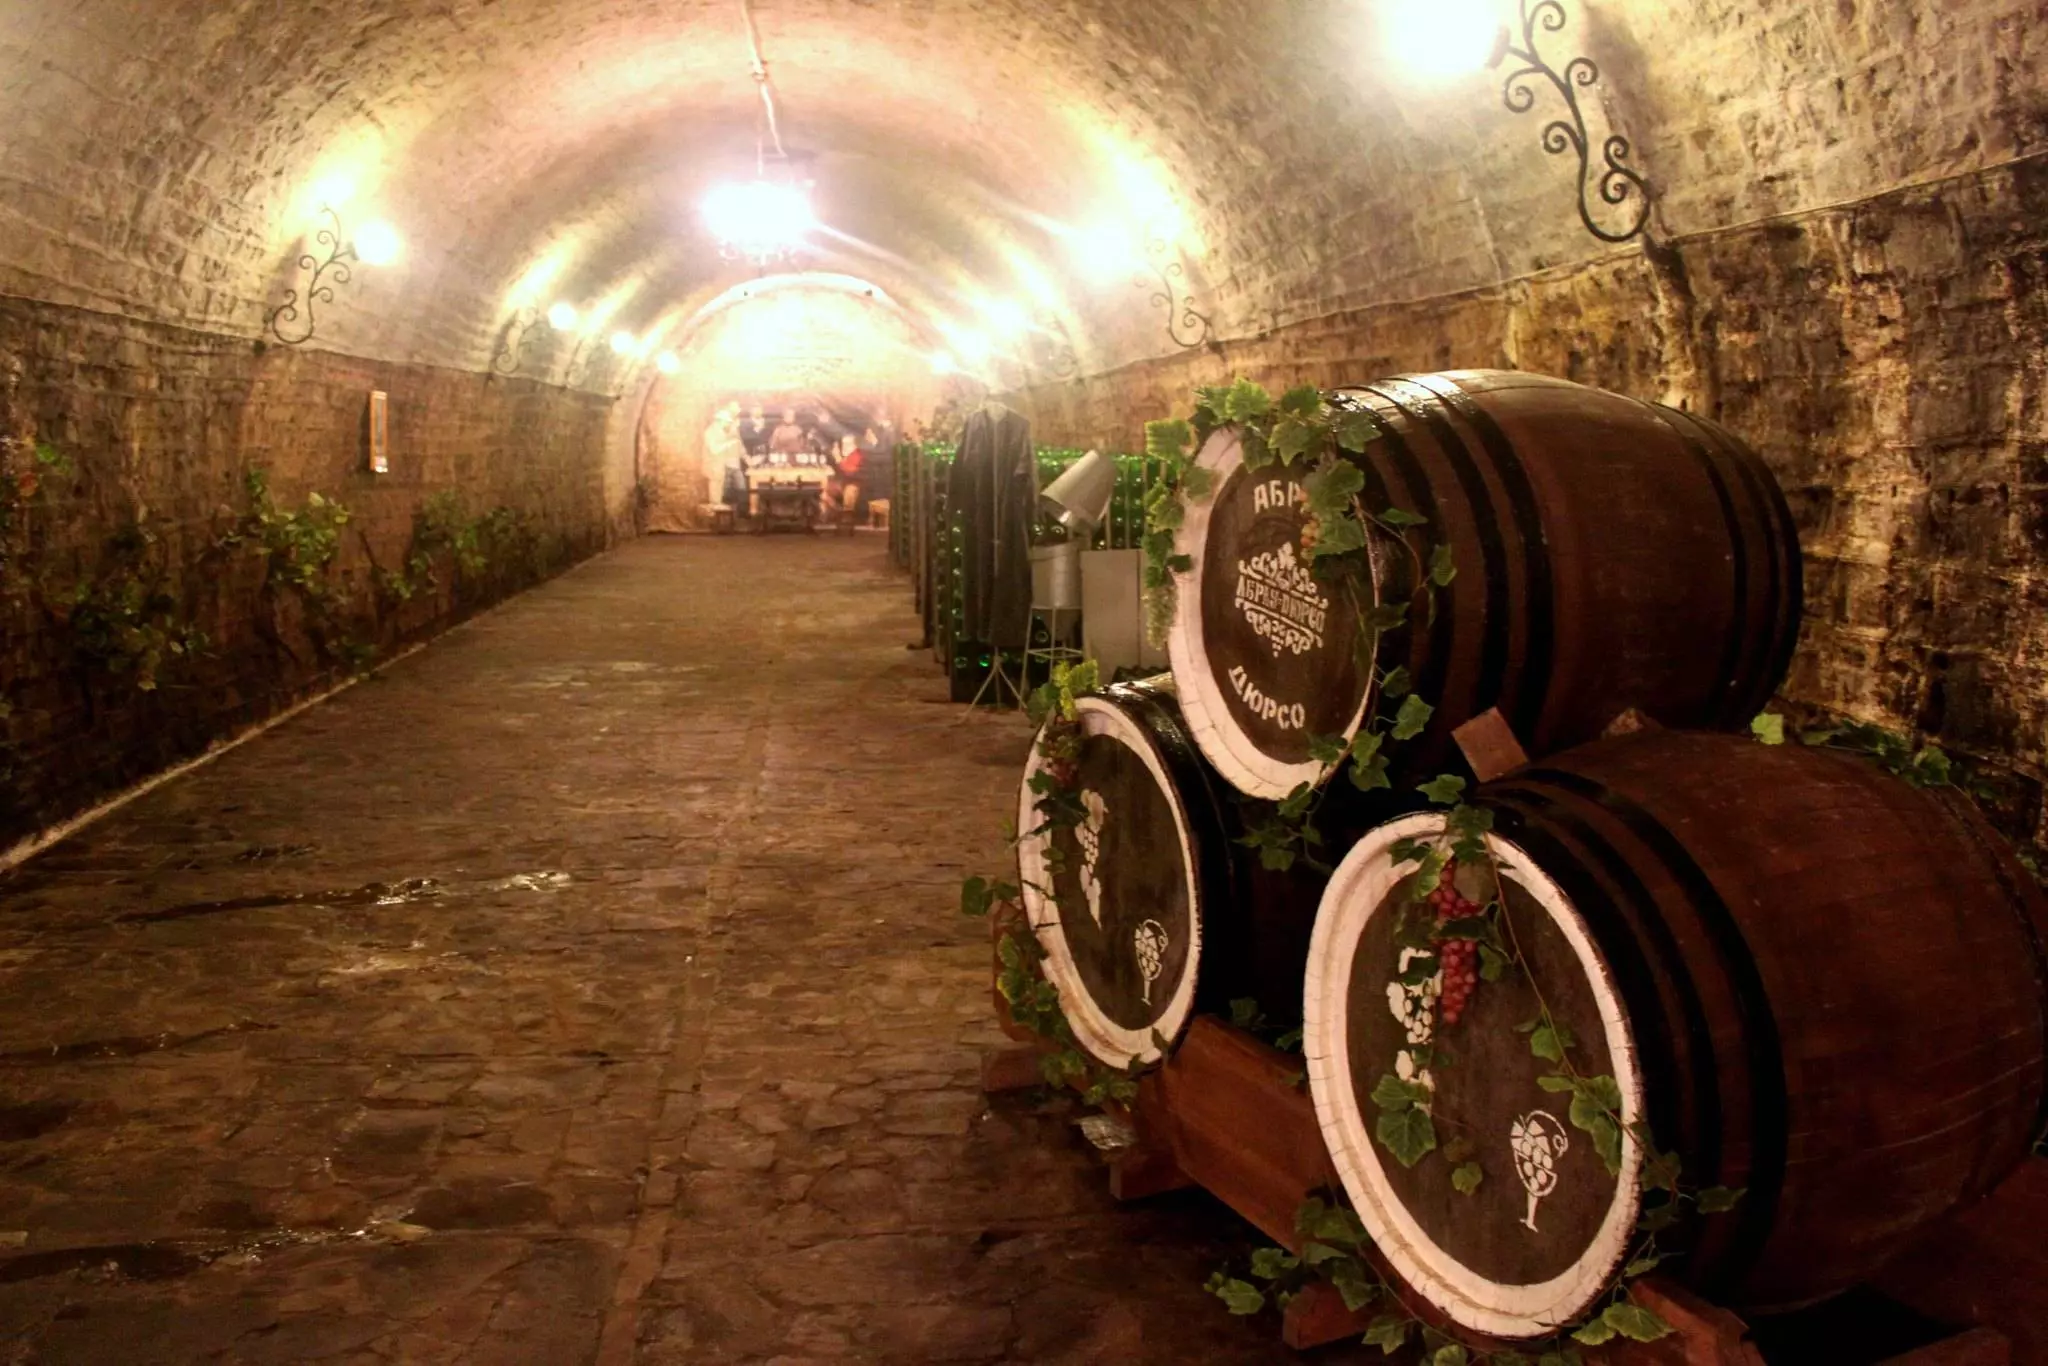 Завод шампанских вин абрау дюрсо (фото): где находится, адрес, цены на посещение